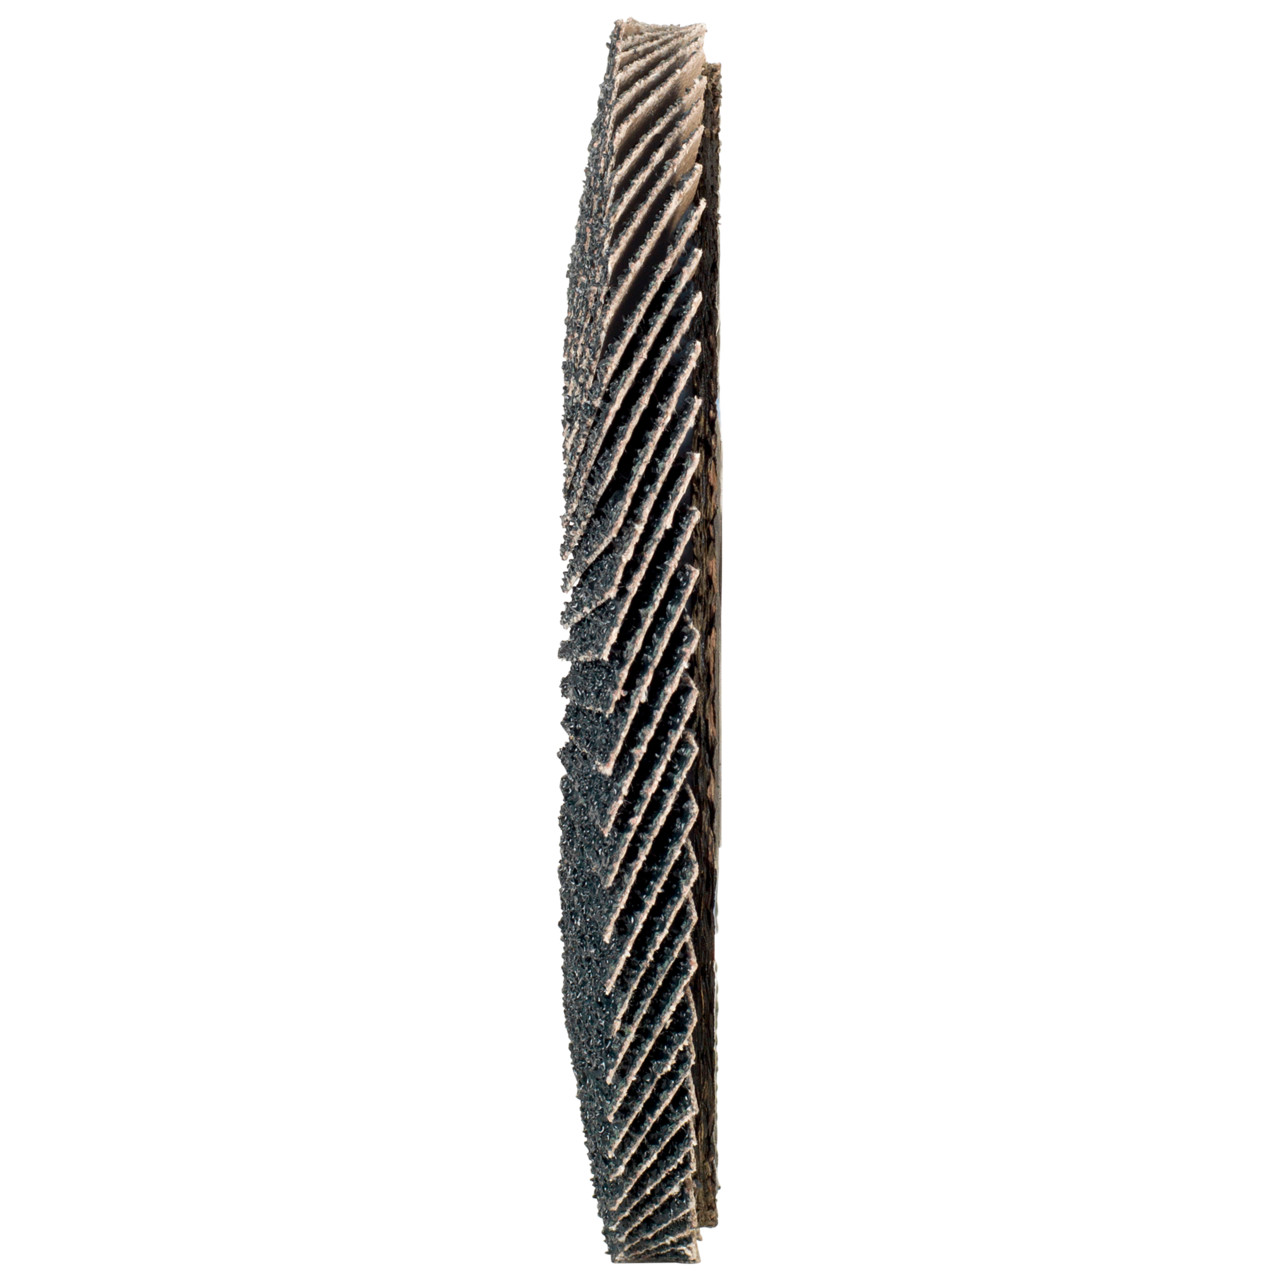 TYROLIT Fächerscheibe DxH 178x22,2 2in1 für Stahl & Edelstahl, P80, Form: 27A - gekröpfte Ausführung (Glasfaserträgerkörperausführung), Art. 668673